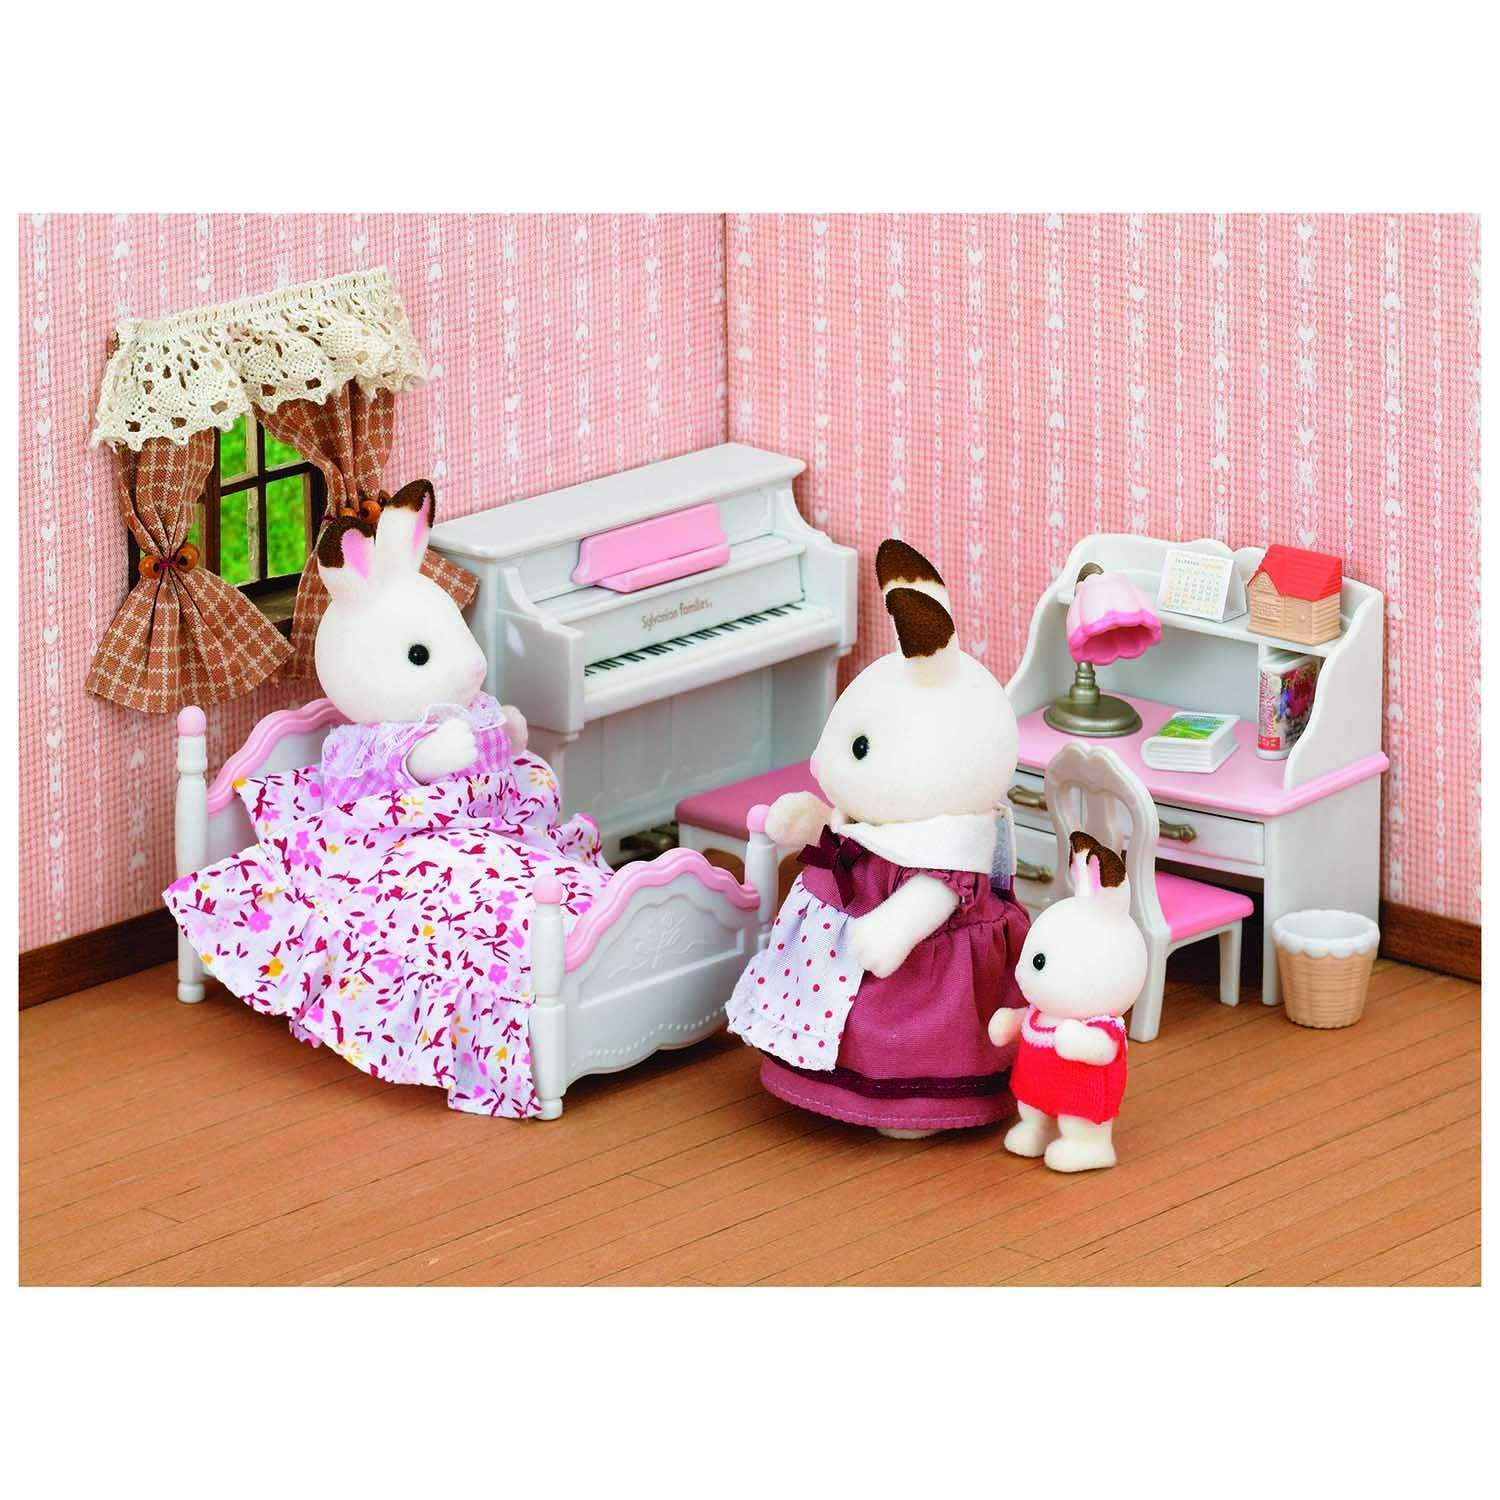 Набор Sylvanian Families Детская комната, бело-розовая (5032) - фото 5